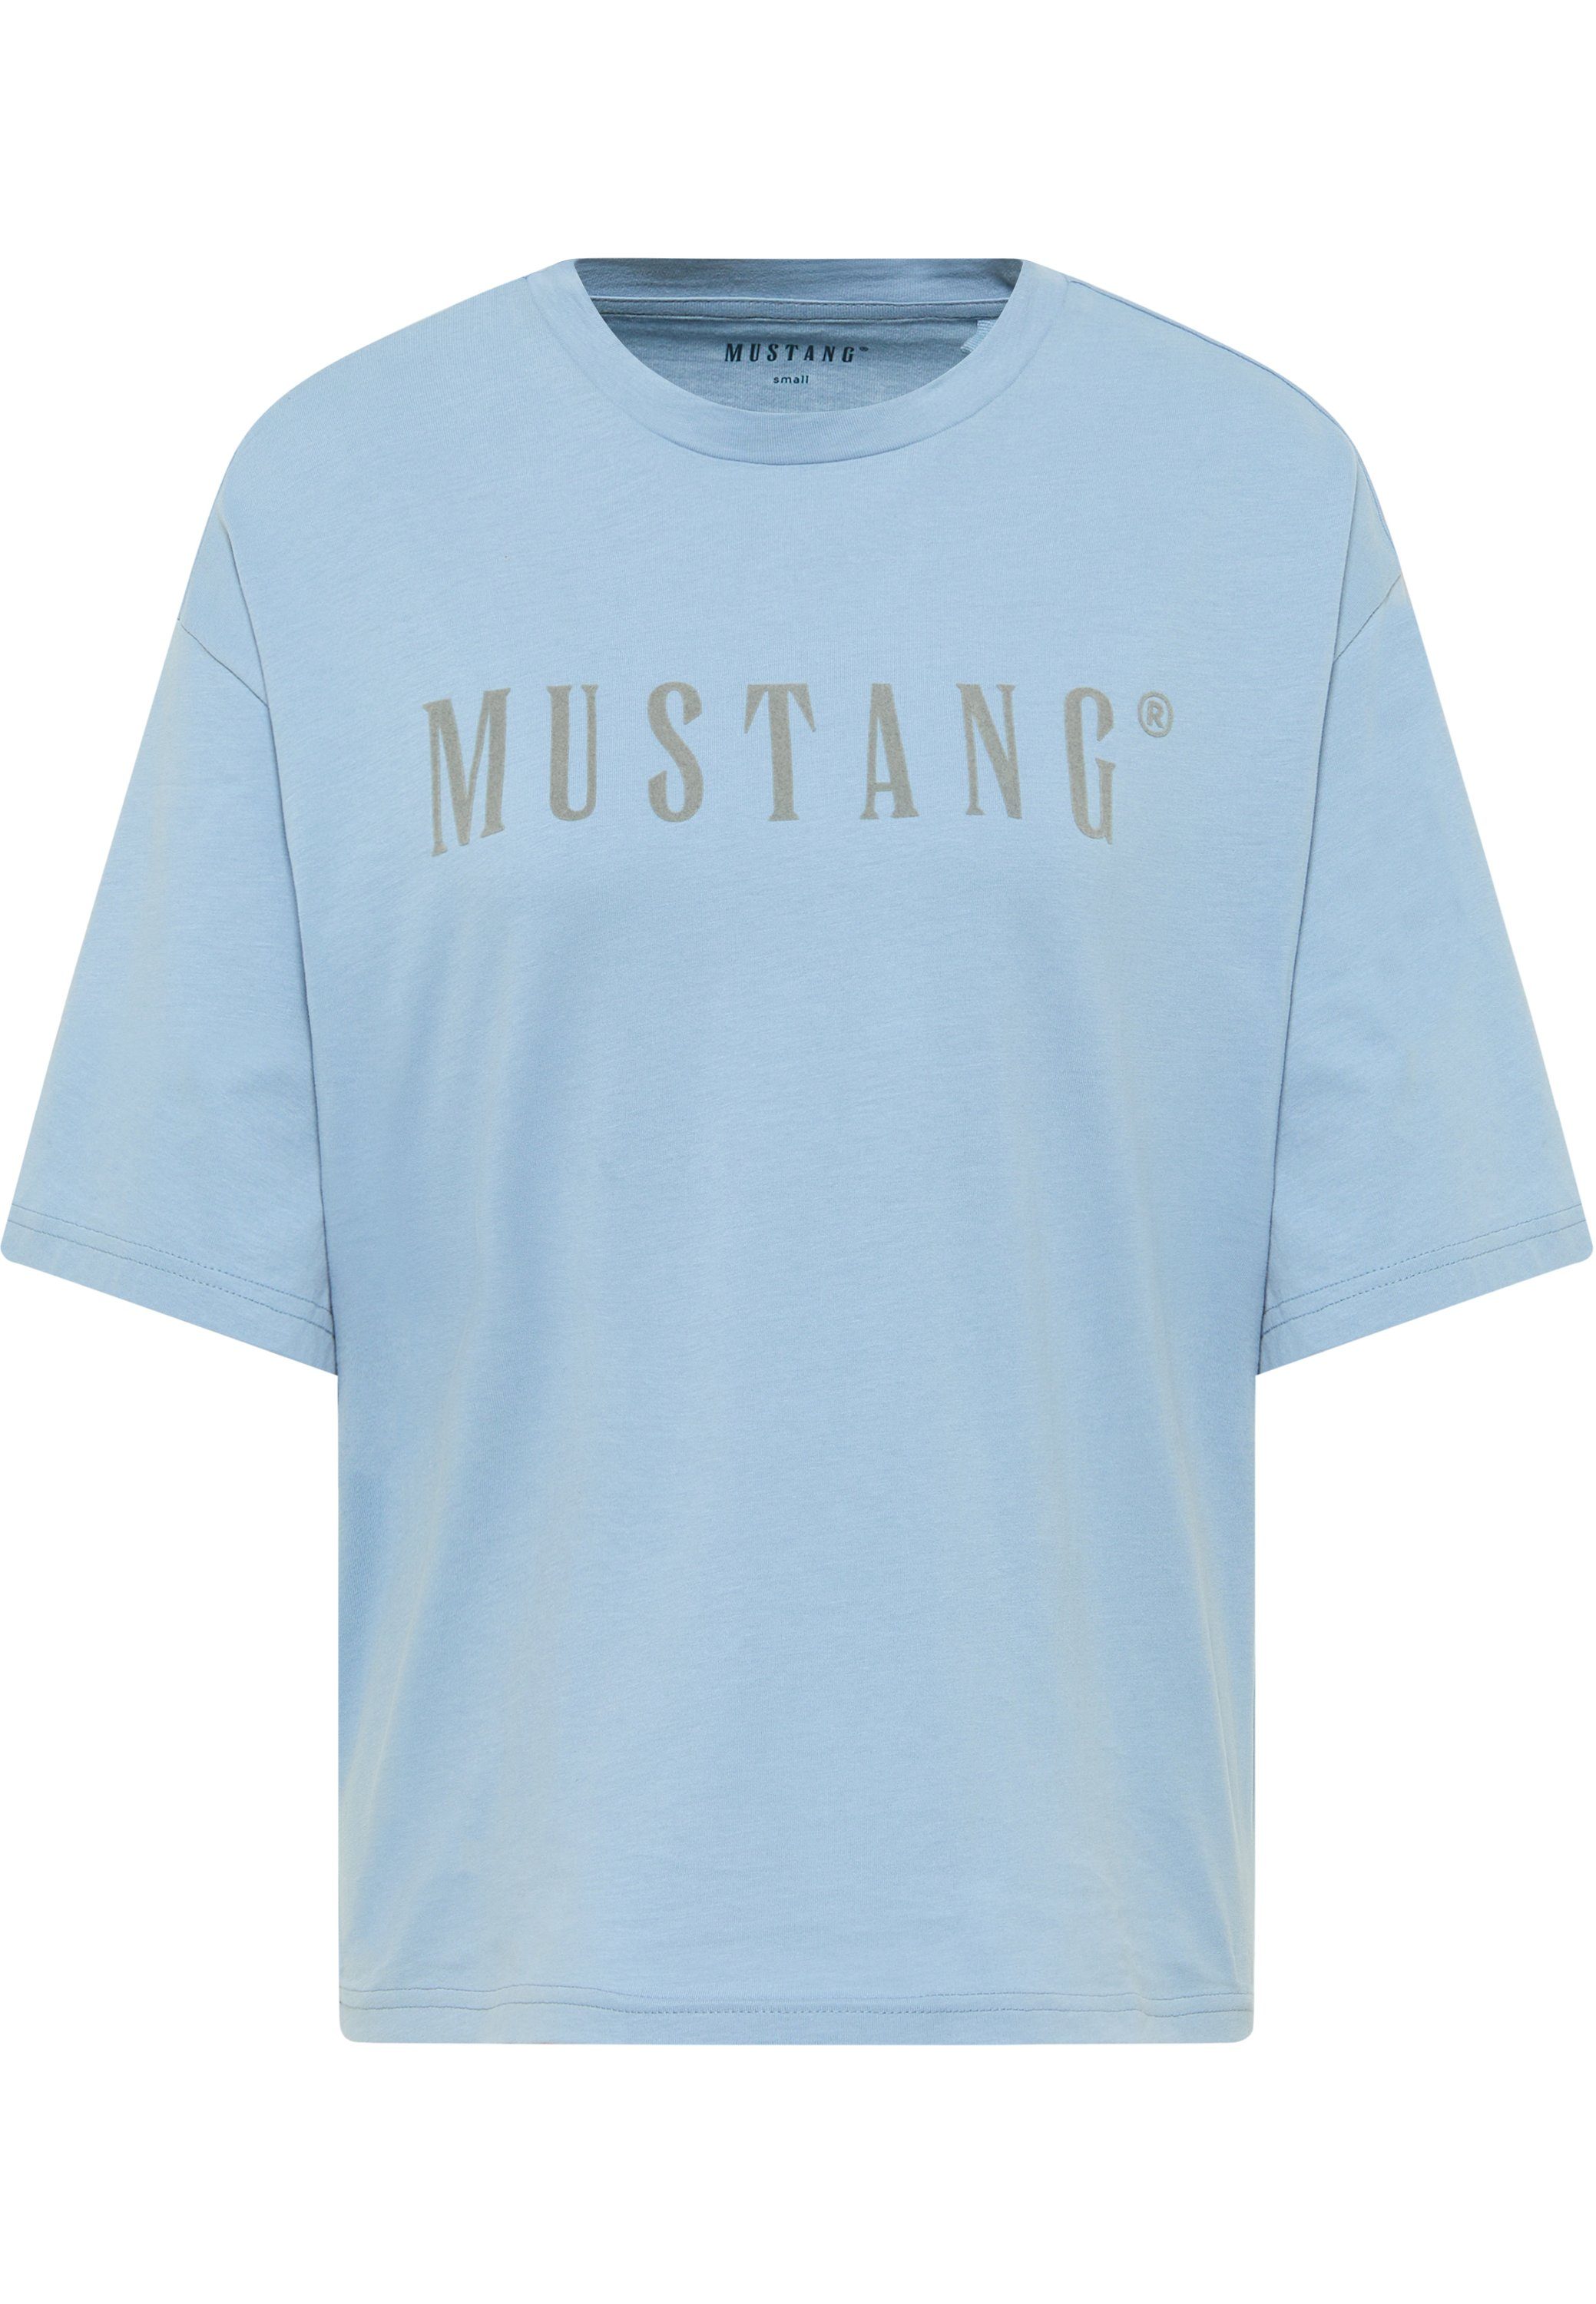 Outlet-Besonderheit! MUSTANG Kurzarmshirt T-Shirt mittelblau T-Shirt Mustang